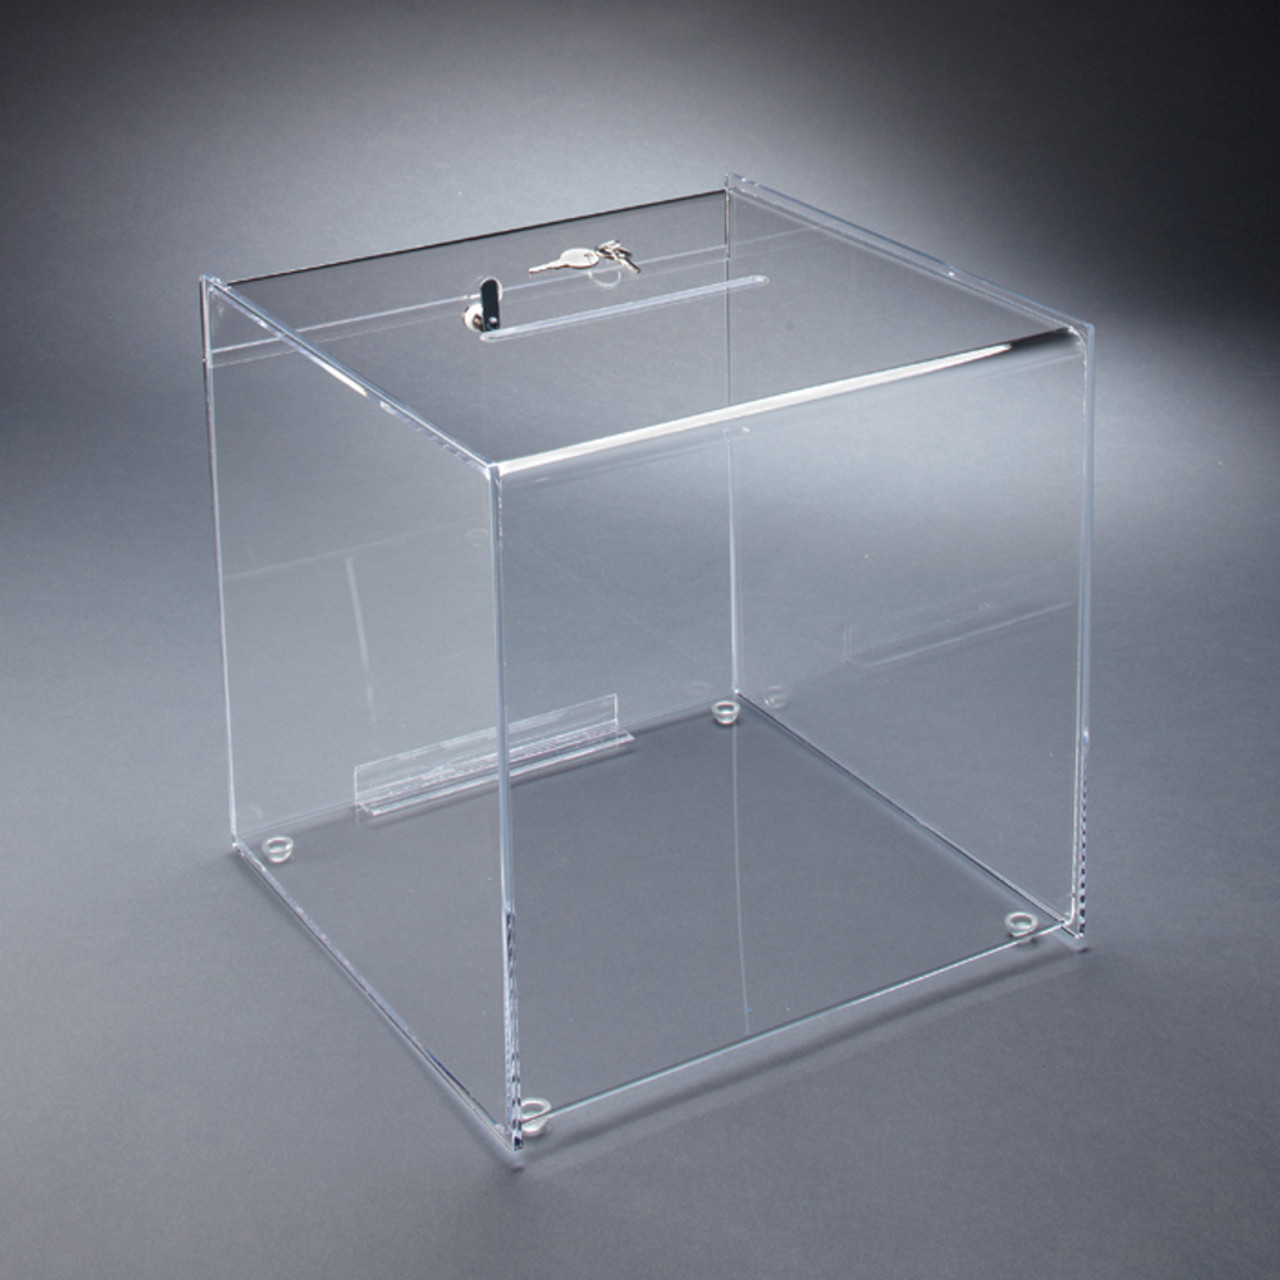 plexiglass box with